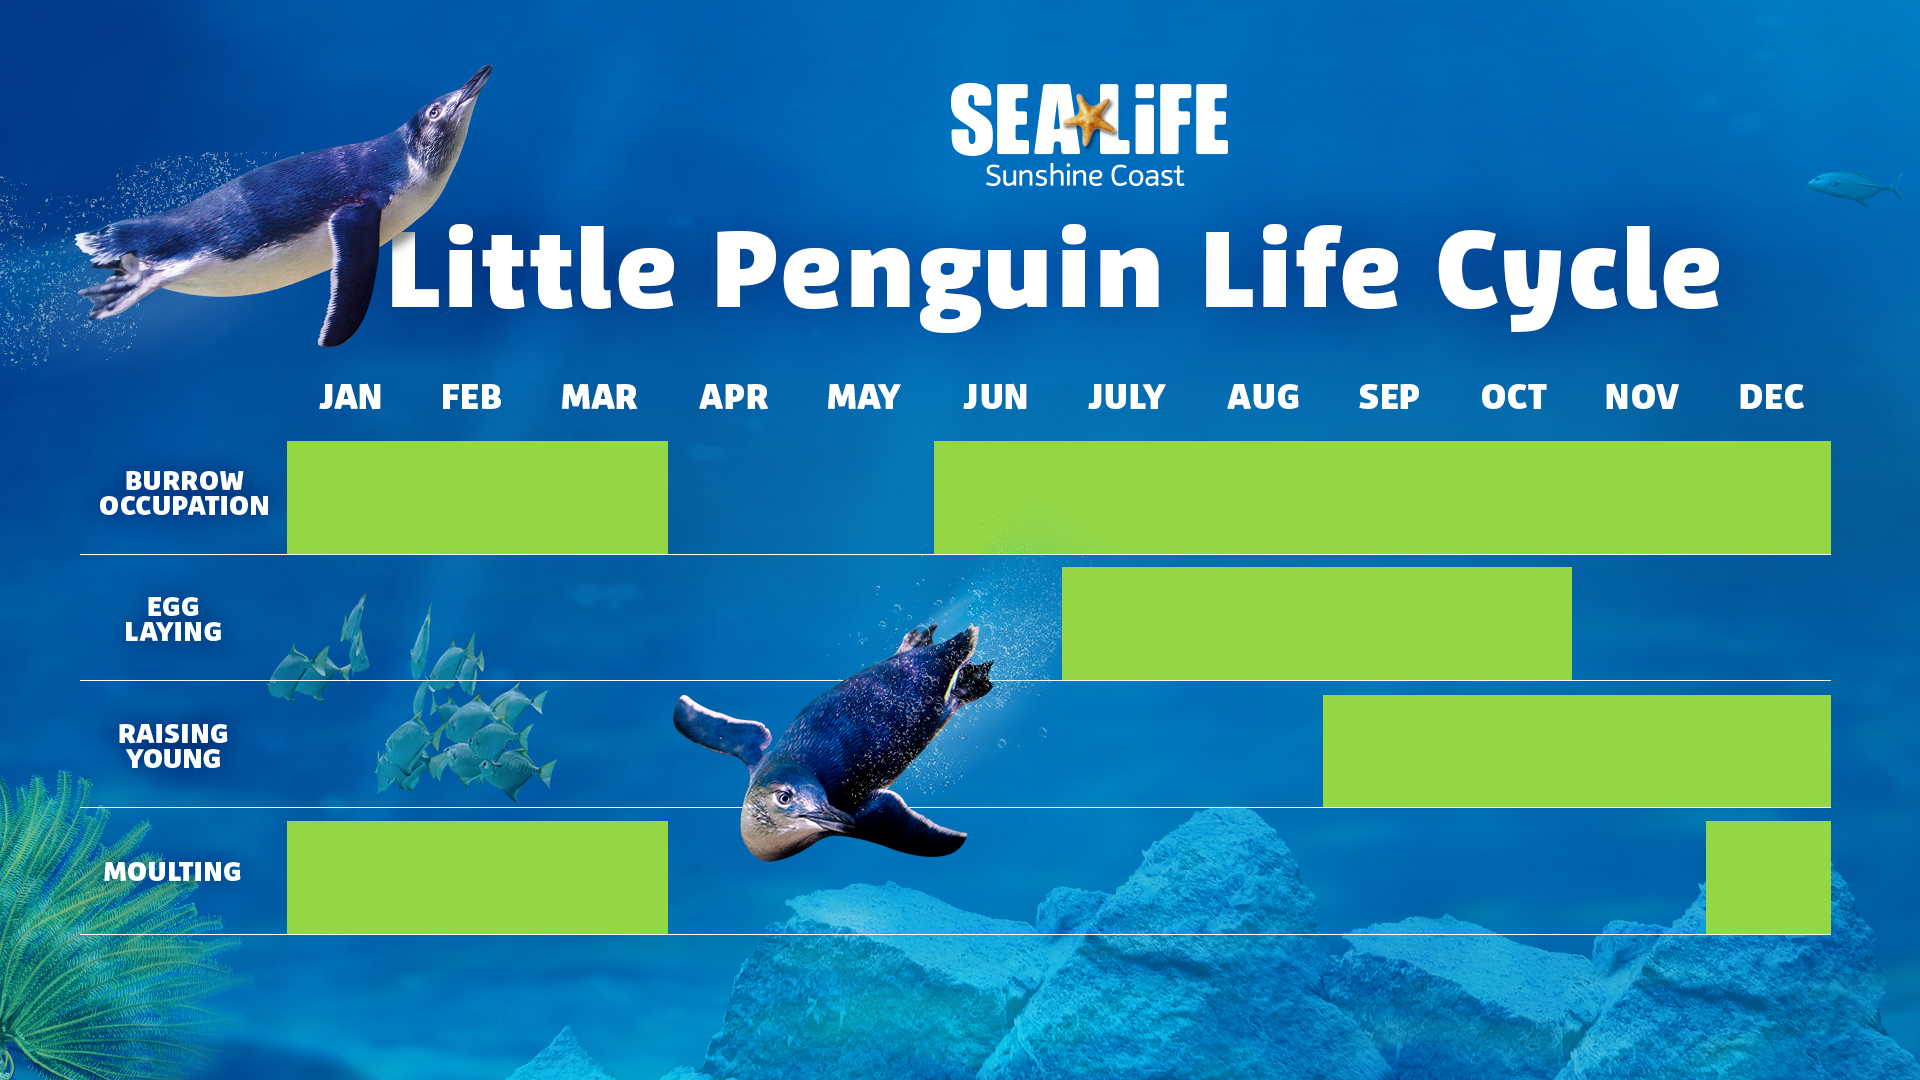 Penguin Life Cycle - SEA LIFE Sunshine Coast